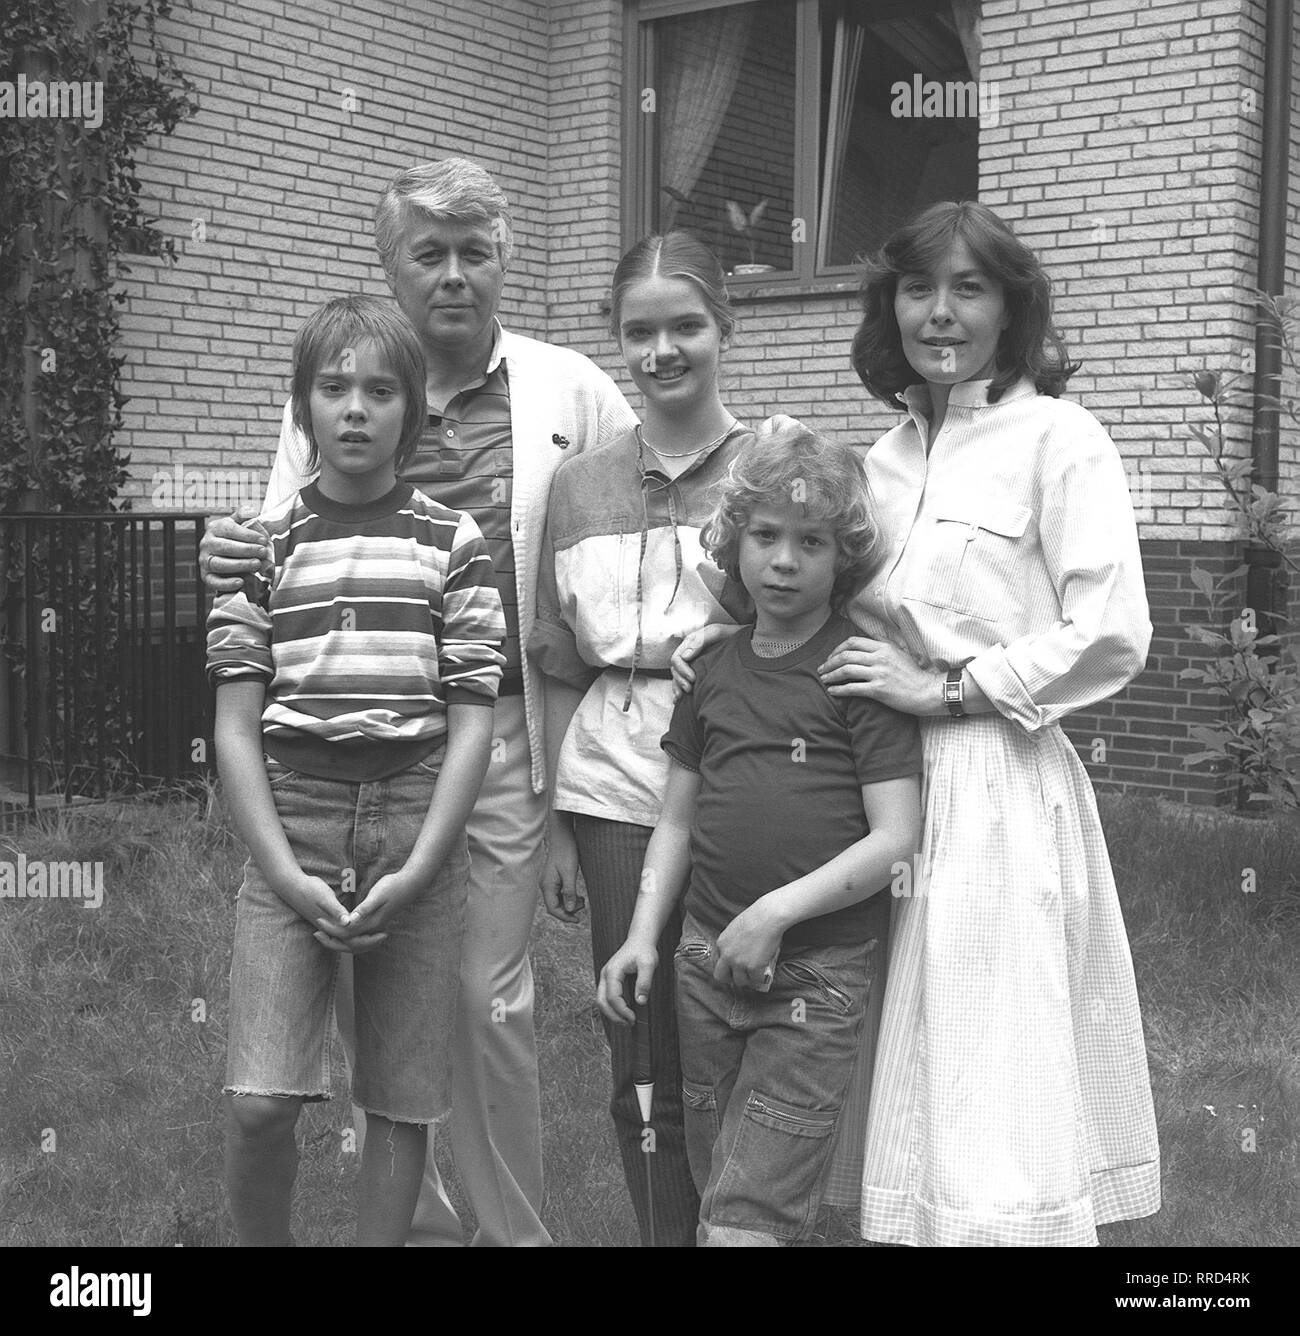 ICH HEIRATE EINE FAMILIE/Folge: 1+1=5/D 1983/Der alleinstehende Werbegrafiker Werner Schumann (Peter Weck, 2. v. li.) und Angelika Graf (Thekla Carola Wied, a.), die geschiedene Mutter der drei Kinder Tanja (JULIA BIEDERMANN), Markus (TIMMO NIESNER, l.) und Tom (TAREK HELMY), tun sich zusammen... /177967//Überschrift: Ich heirate eine Familie/BRD 1983 Stockfoto